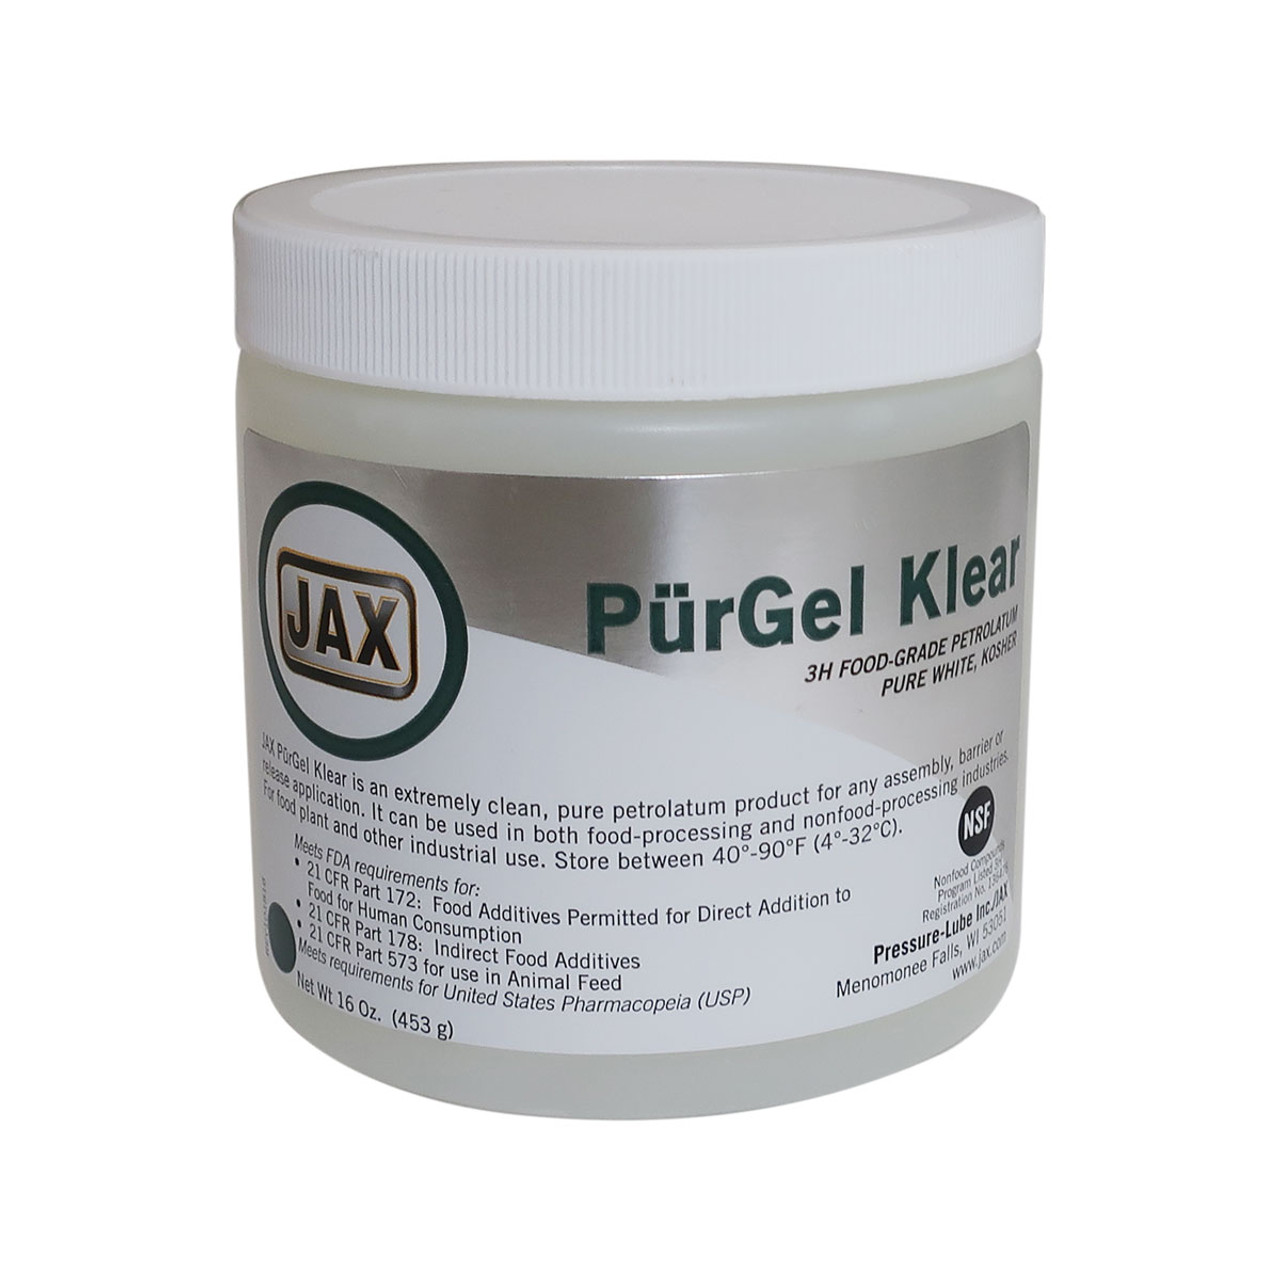 PurGel Klear Petrolatum - 16oz Jar - John M. Ellsworth Co. Inc.